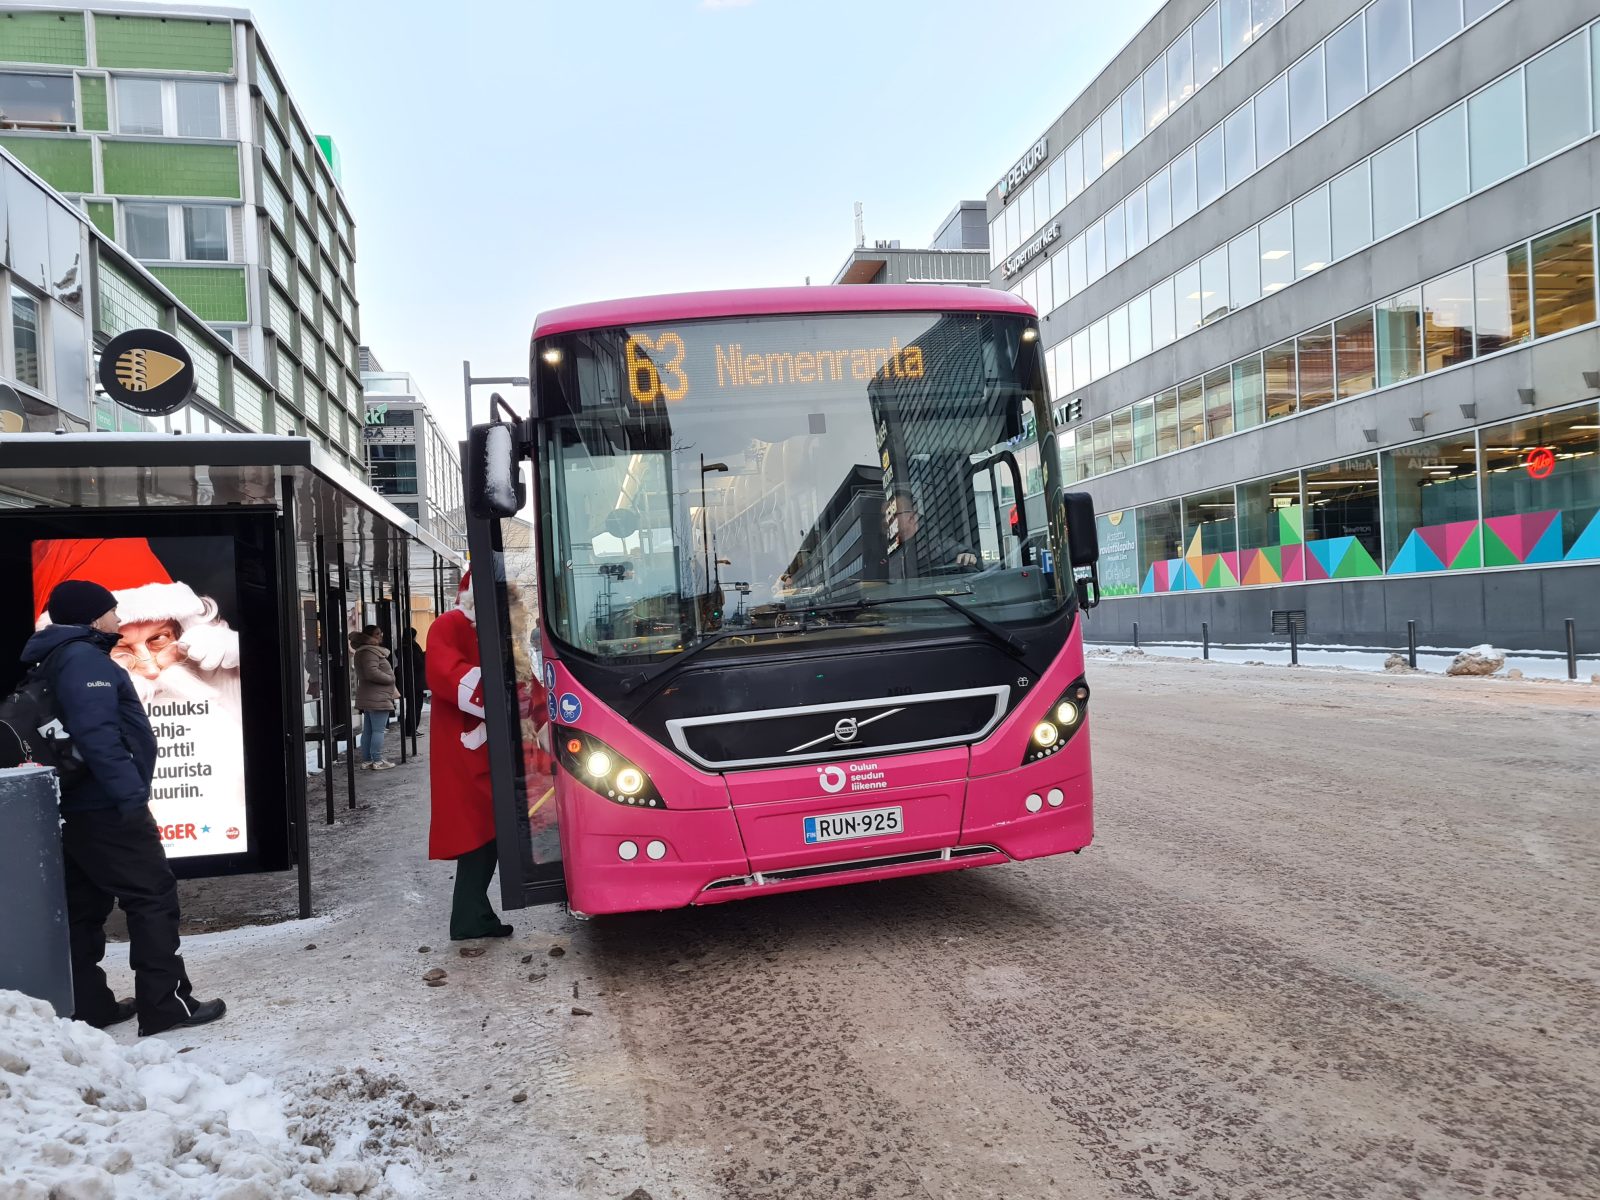 Oulun seuudn liikenten bussi 63 pysäkillä ja joulupukki nousemassa autoon.